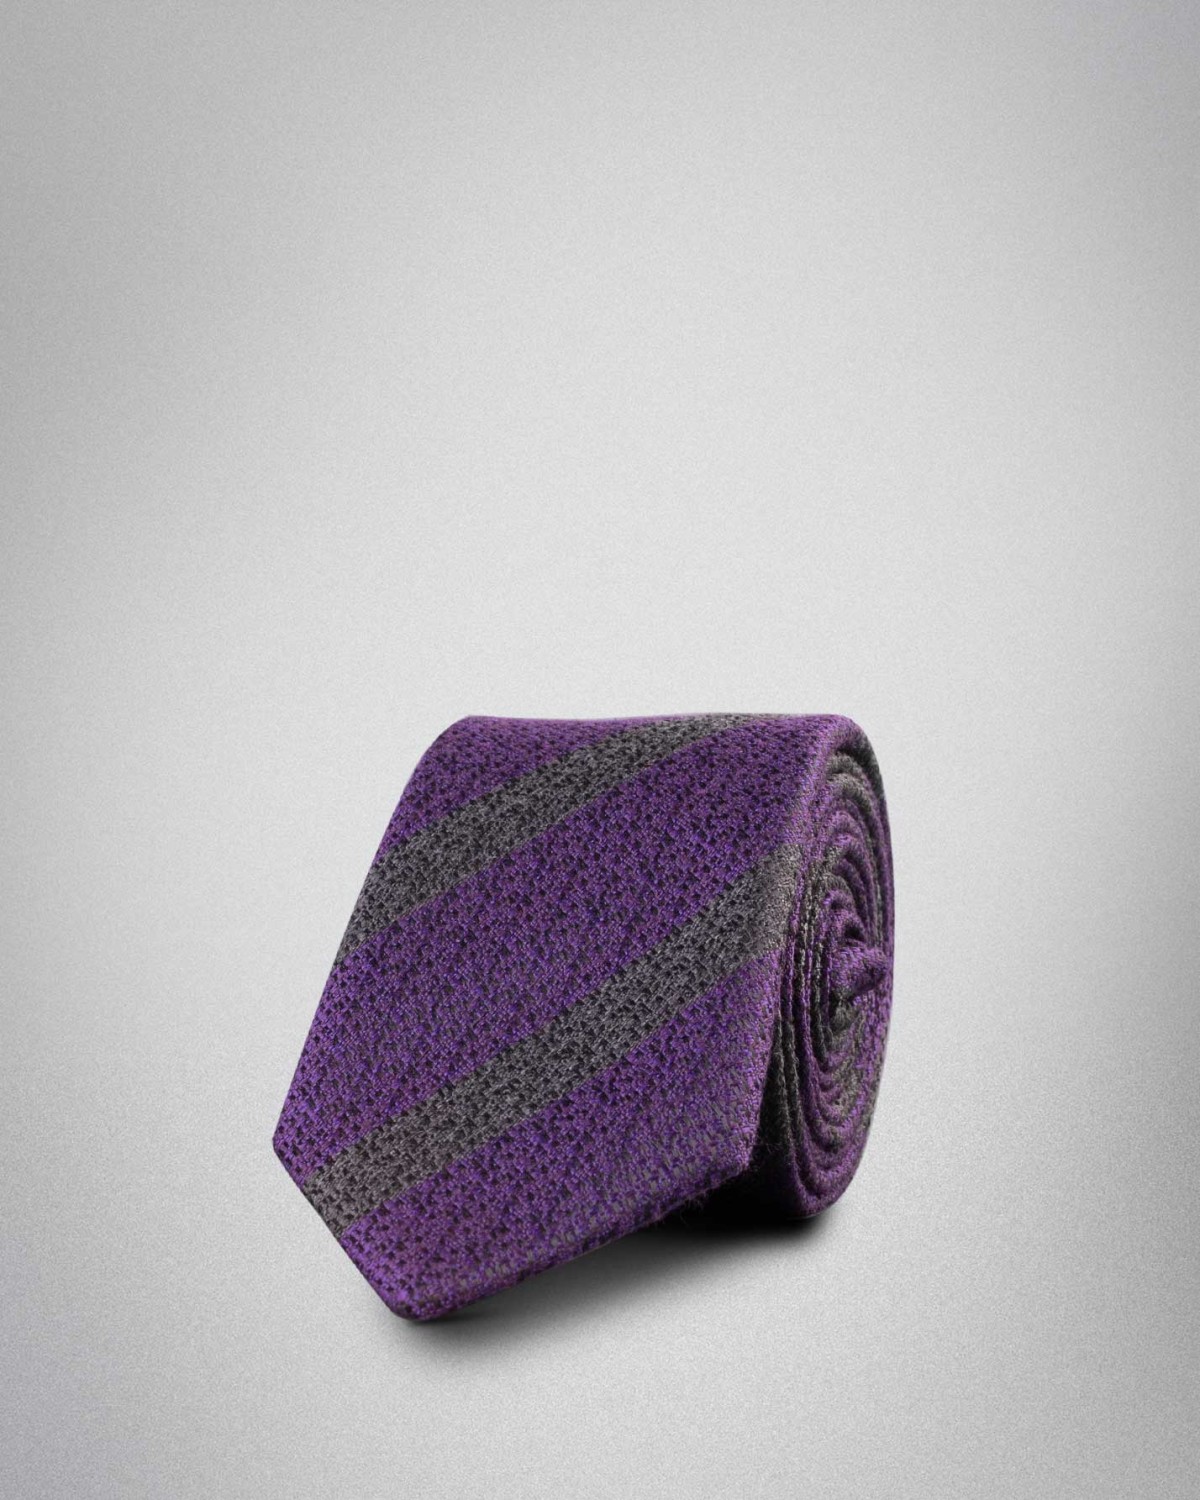 ست کراوات و پوشت 91